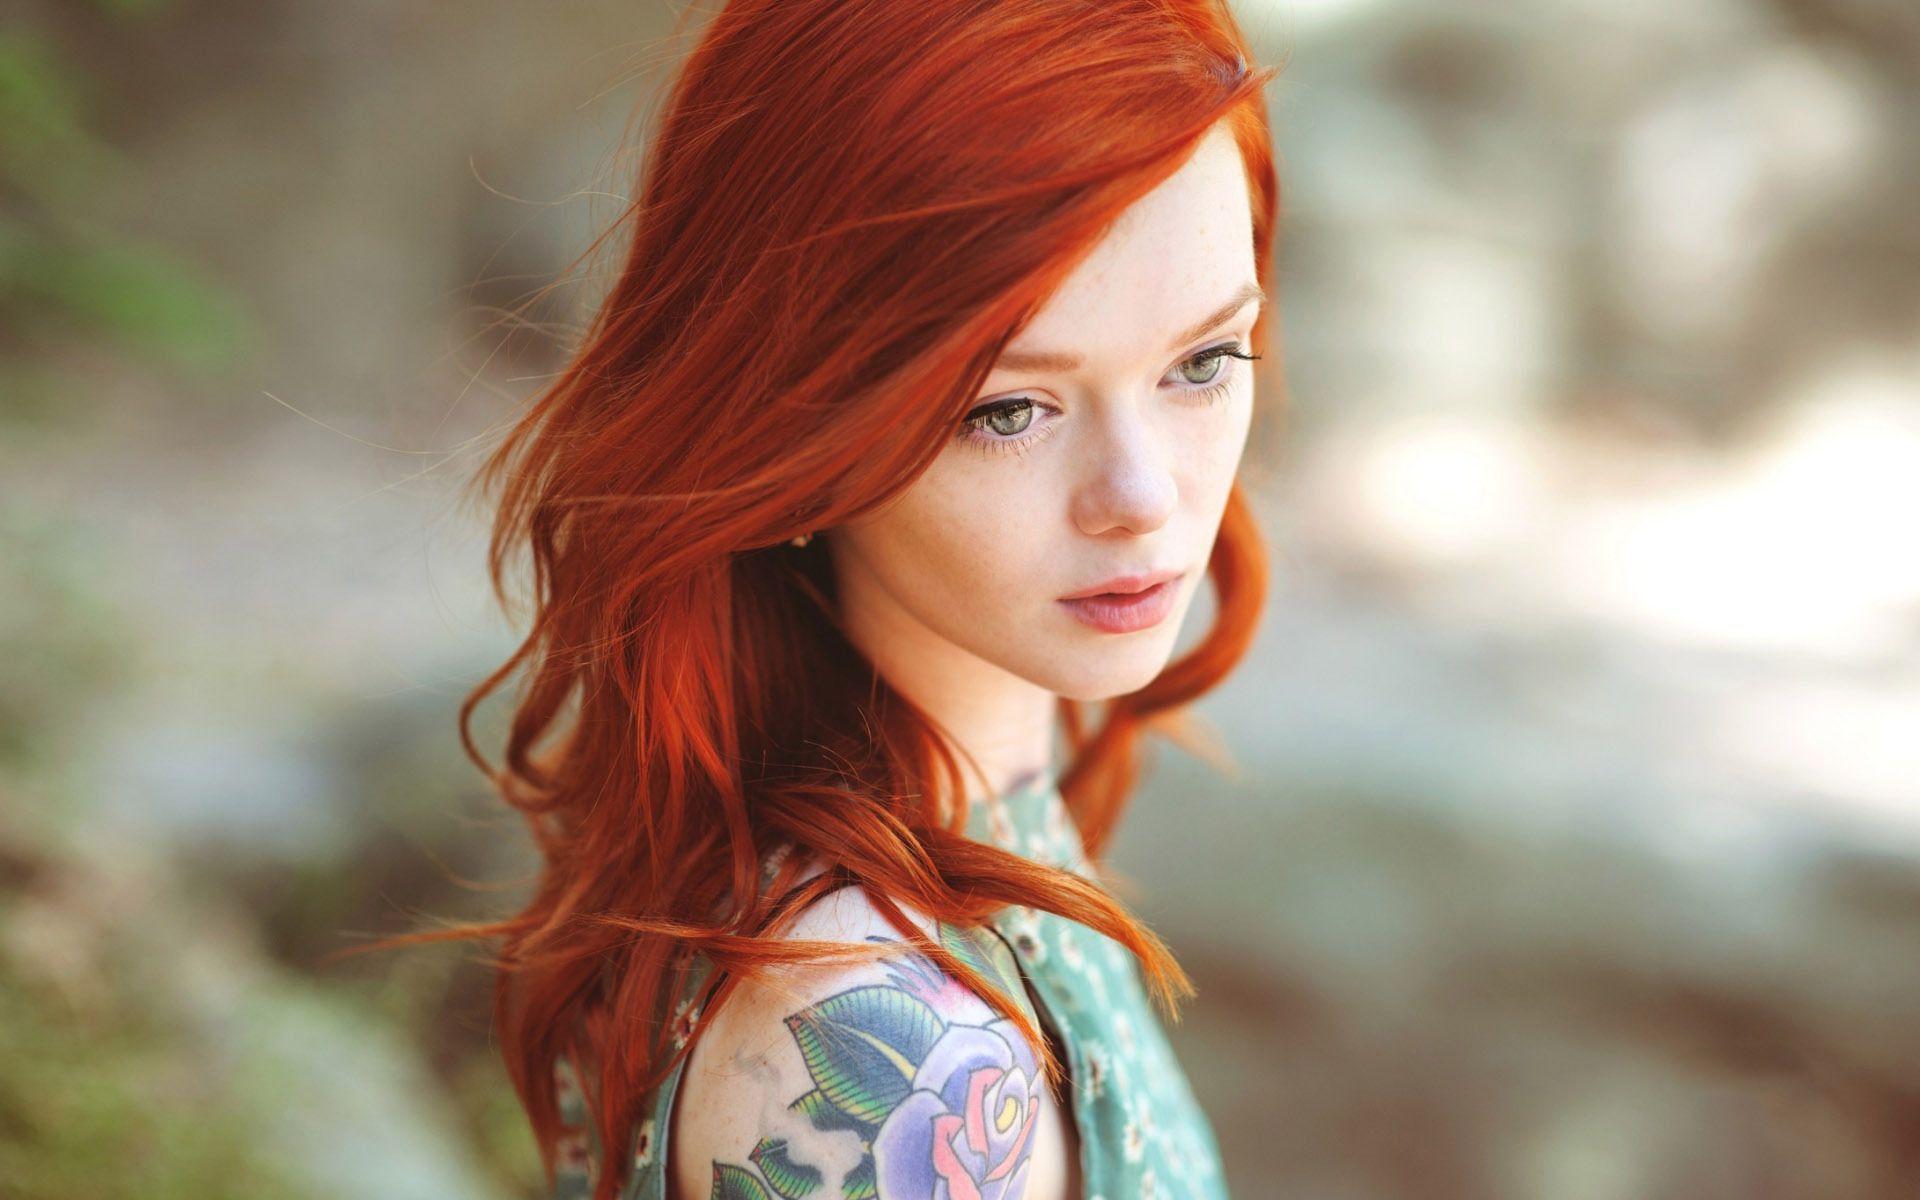 Cute redhead girl HD desktop wallpaper, Widescreen, High